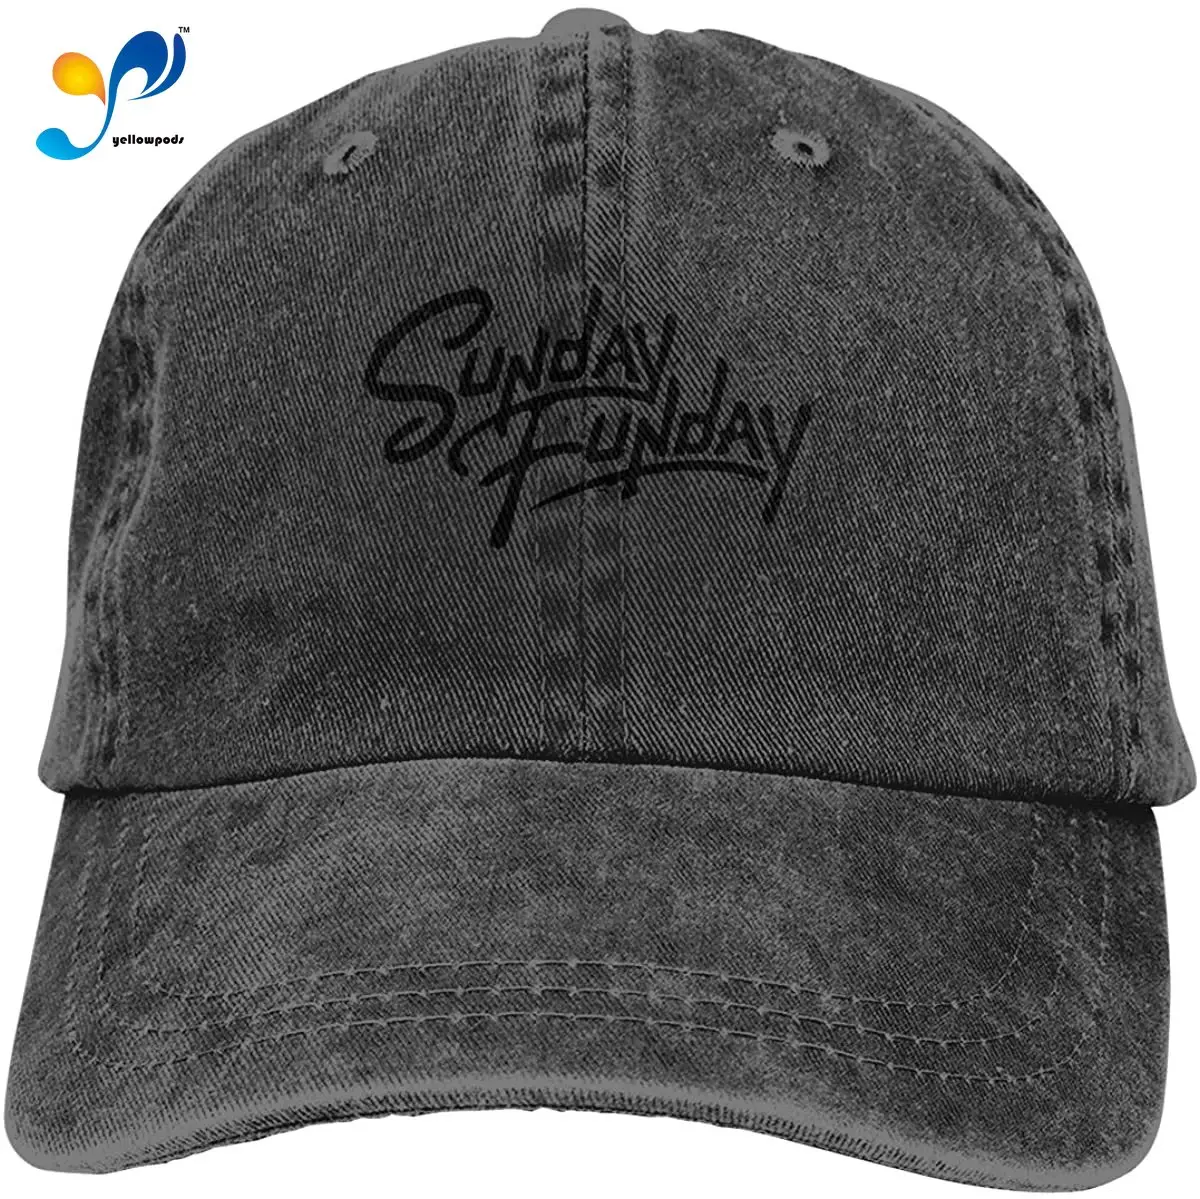 

Sunday Funday Unisex Cowboy Hats Sport Denim Hat Fashion Baseball Cap Black